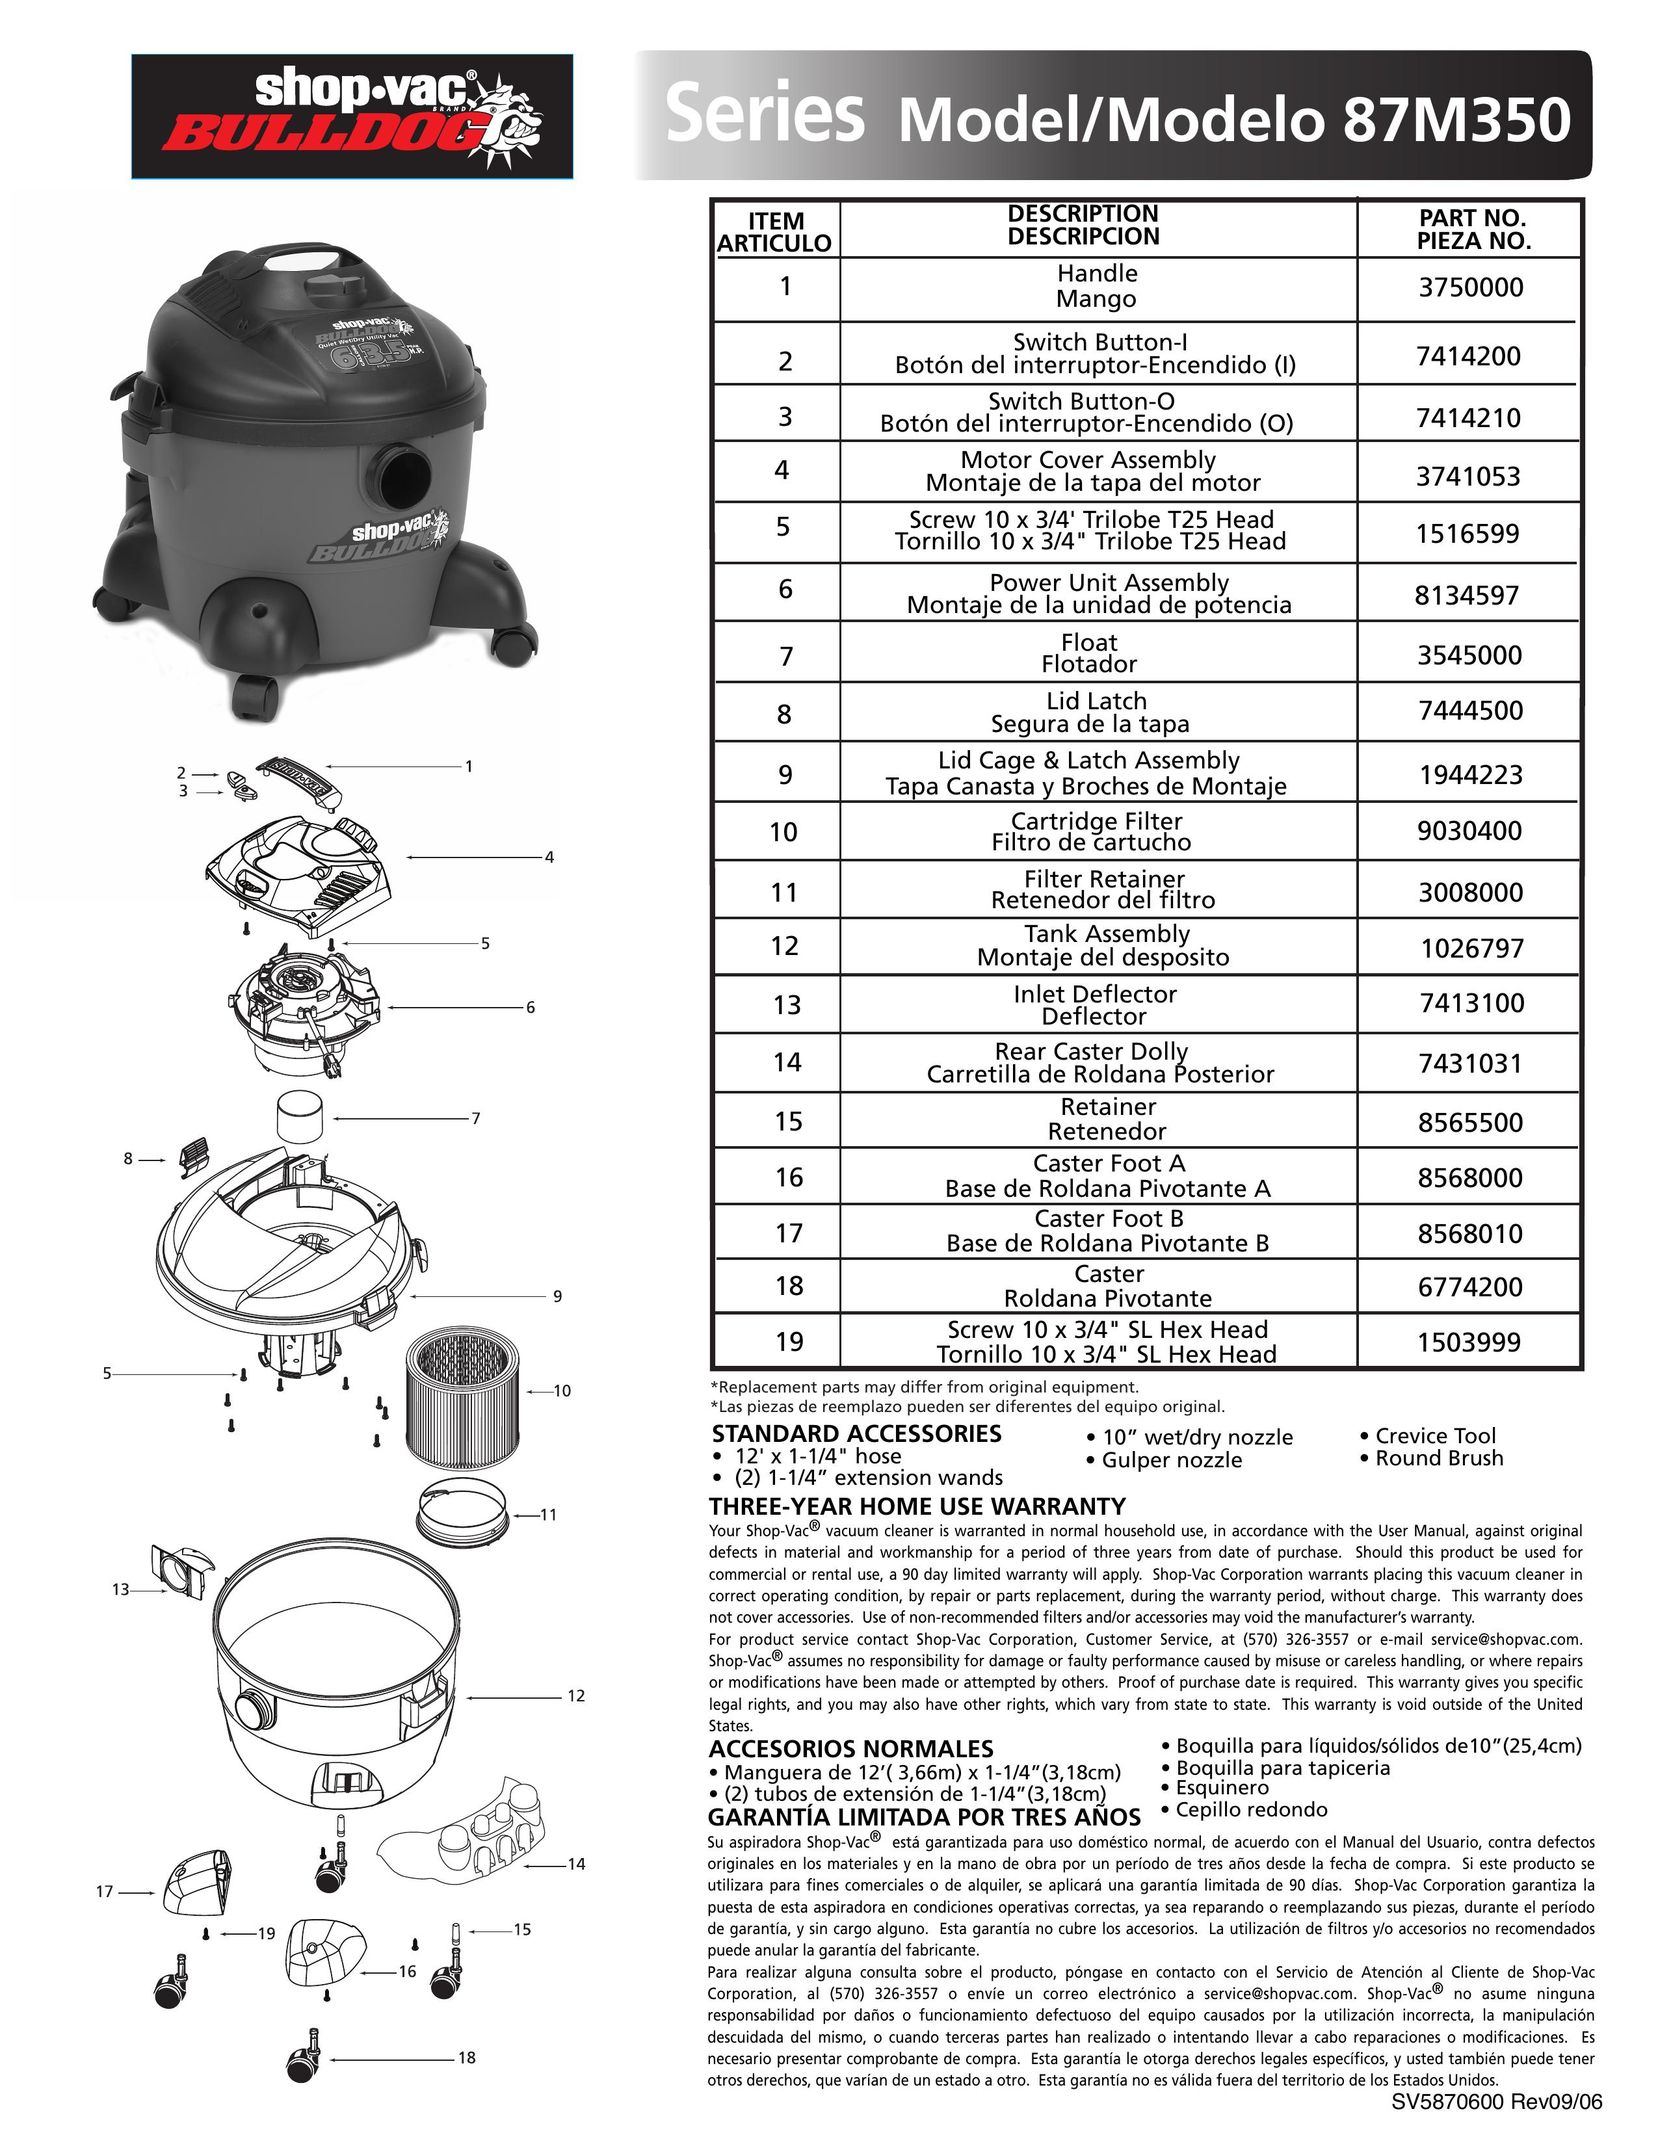 Shop-Vac 87m350 Vacuum Cleaner User Manual